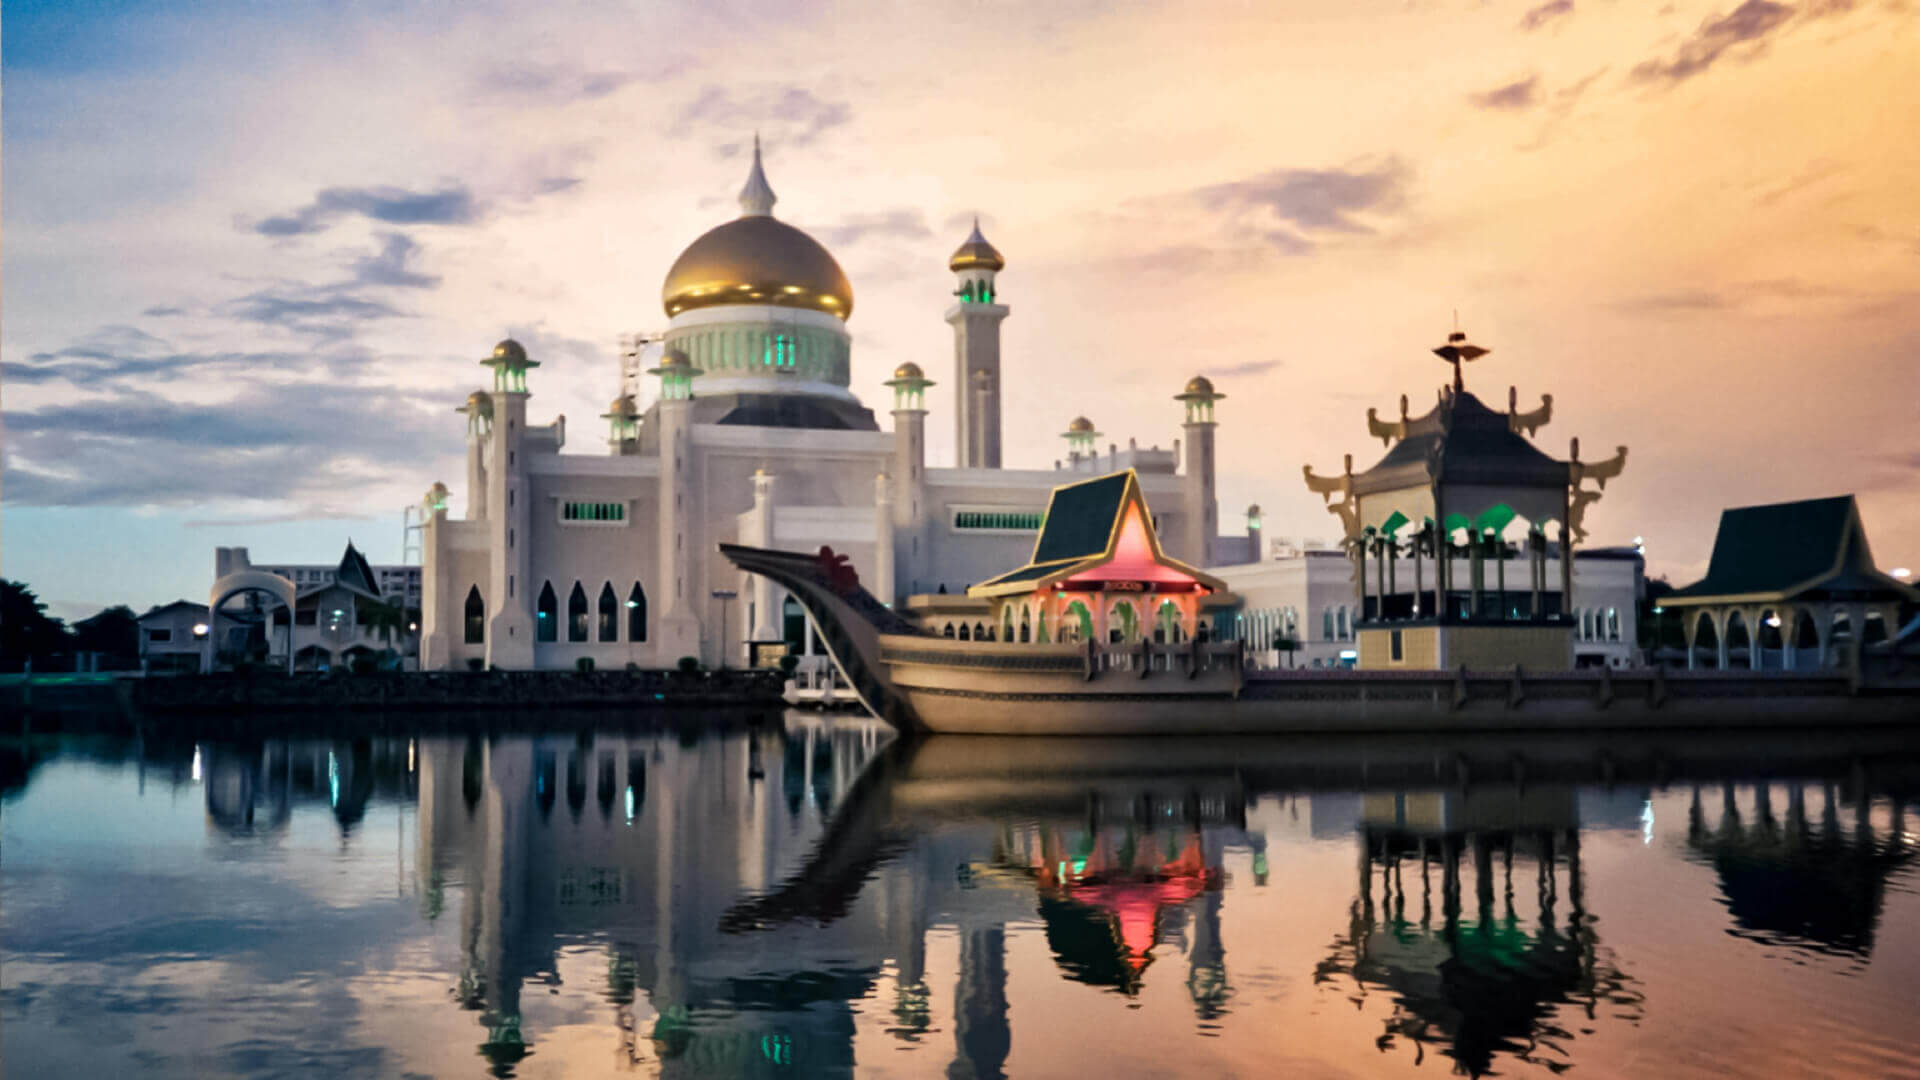 Brunei travel guide - Travel S helper